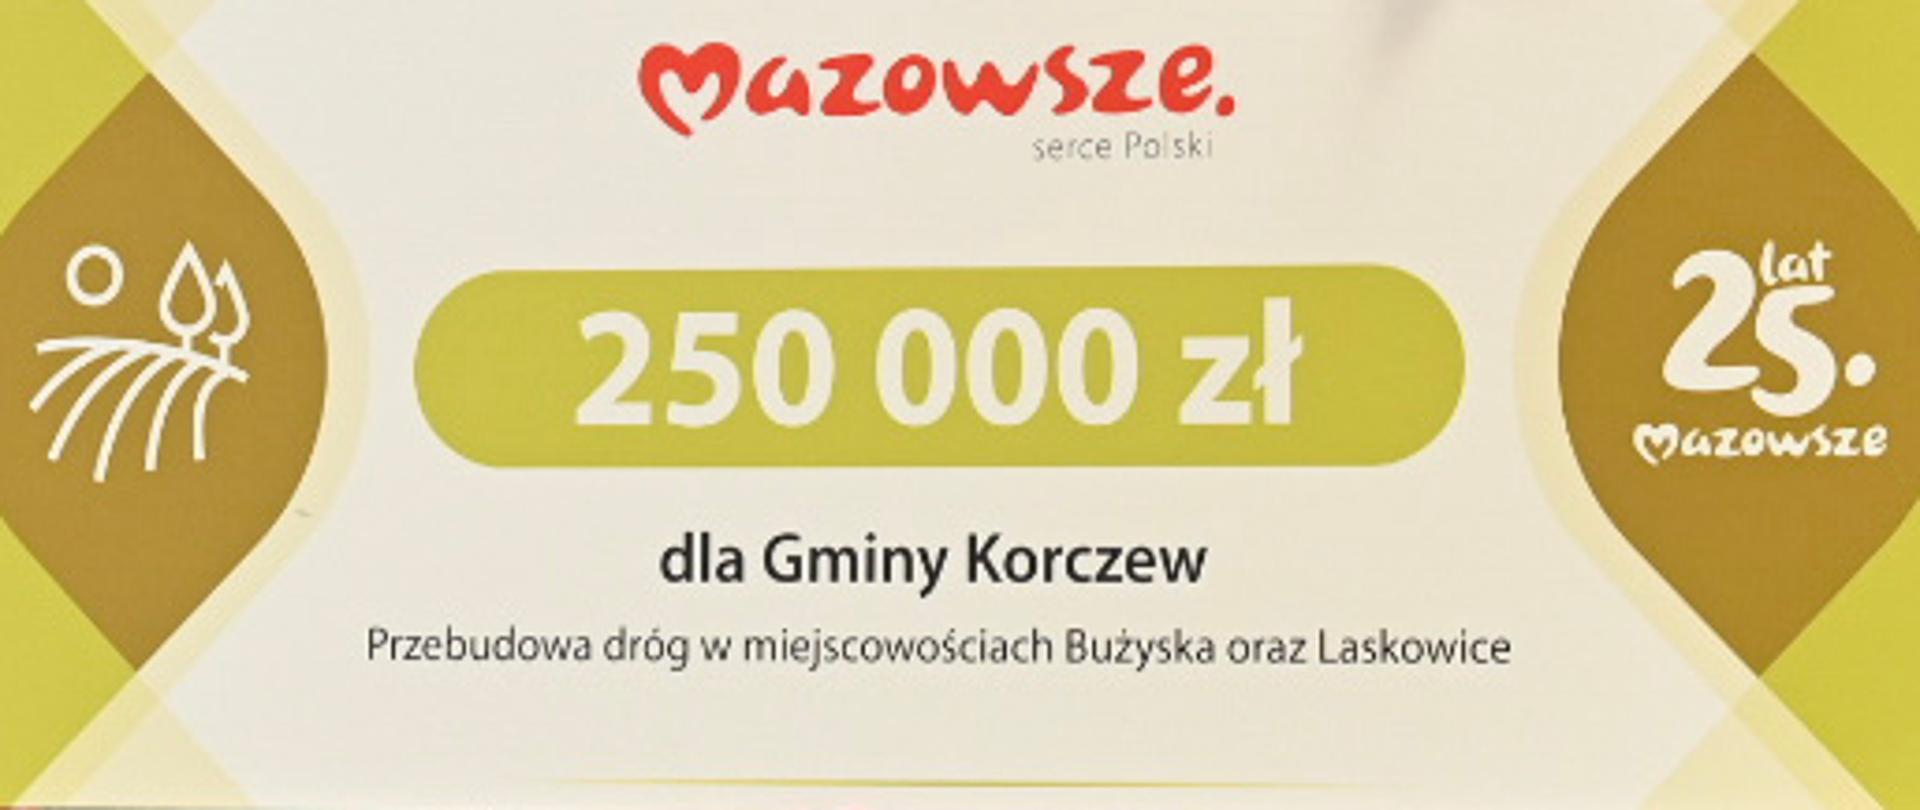 pięć osób stojących na tle tablicy z napisami "Mazowsze" , z których dwie trzymają czek na 250 000 zł.